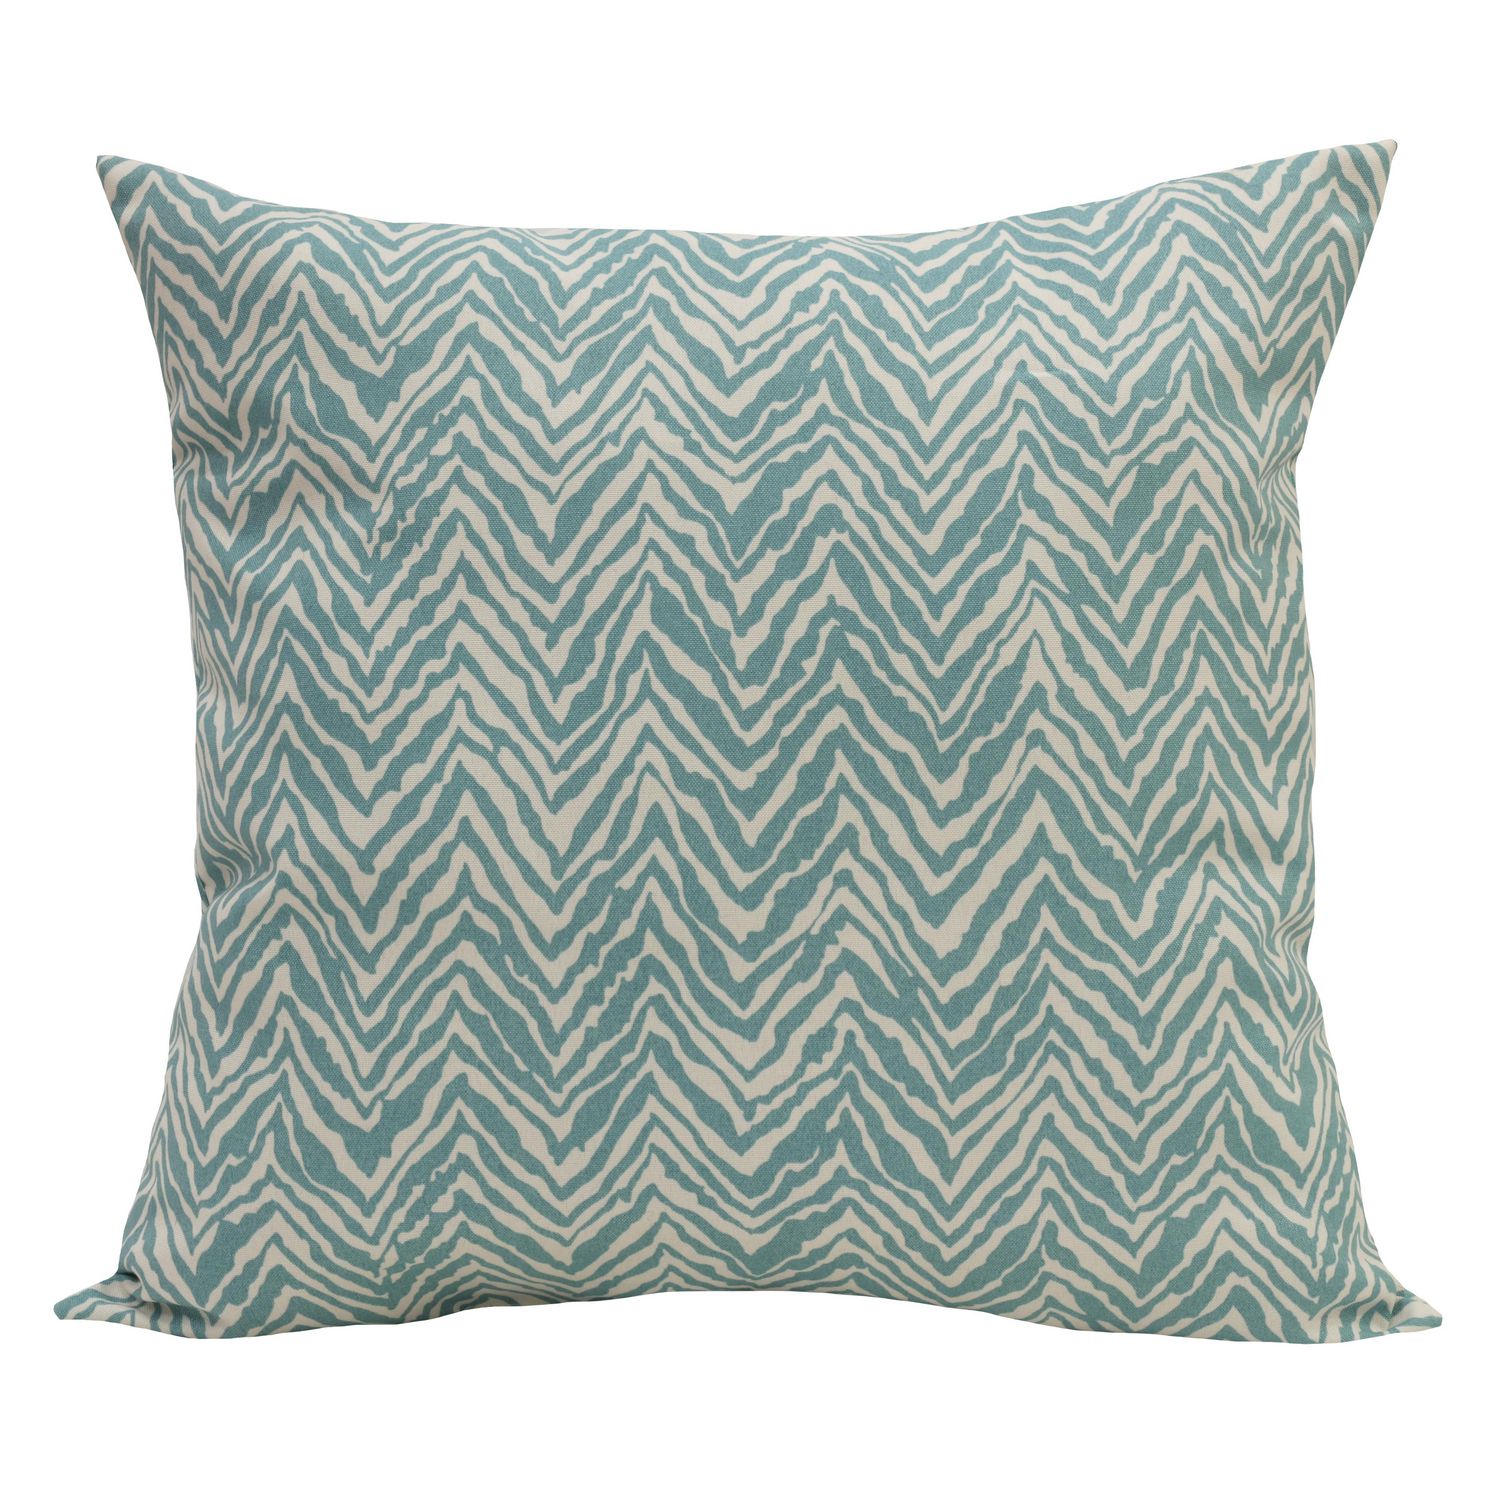 Hillstone Decorative Pillow Throw Cushion, 20" x 20" in